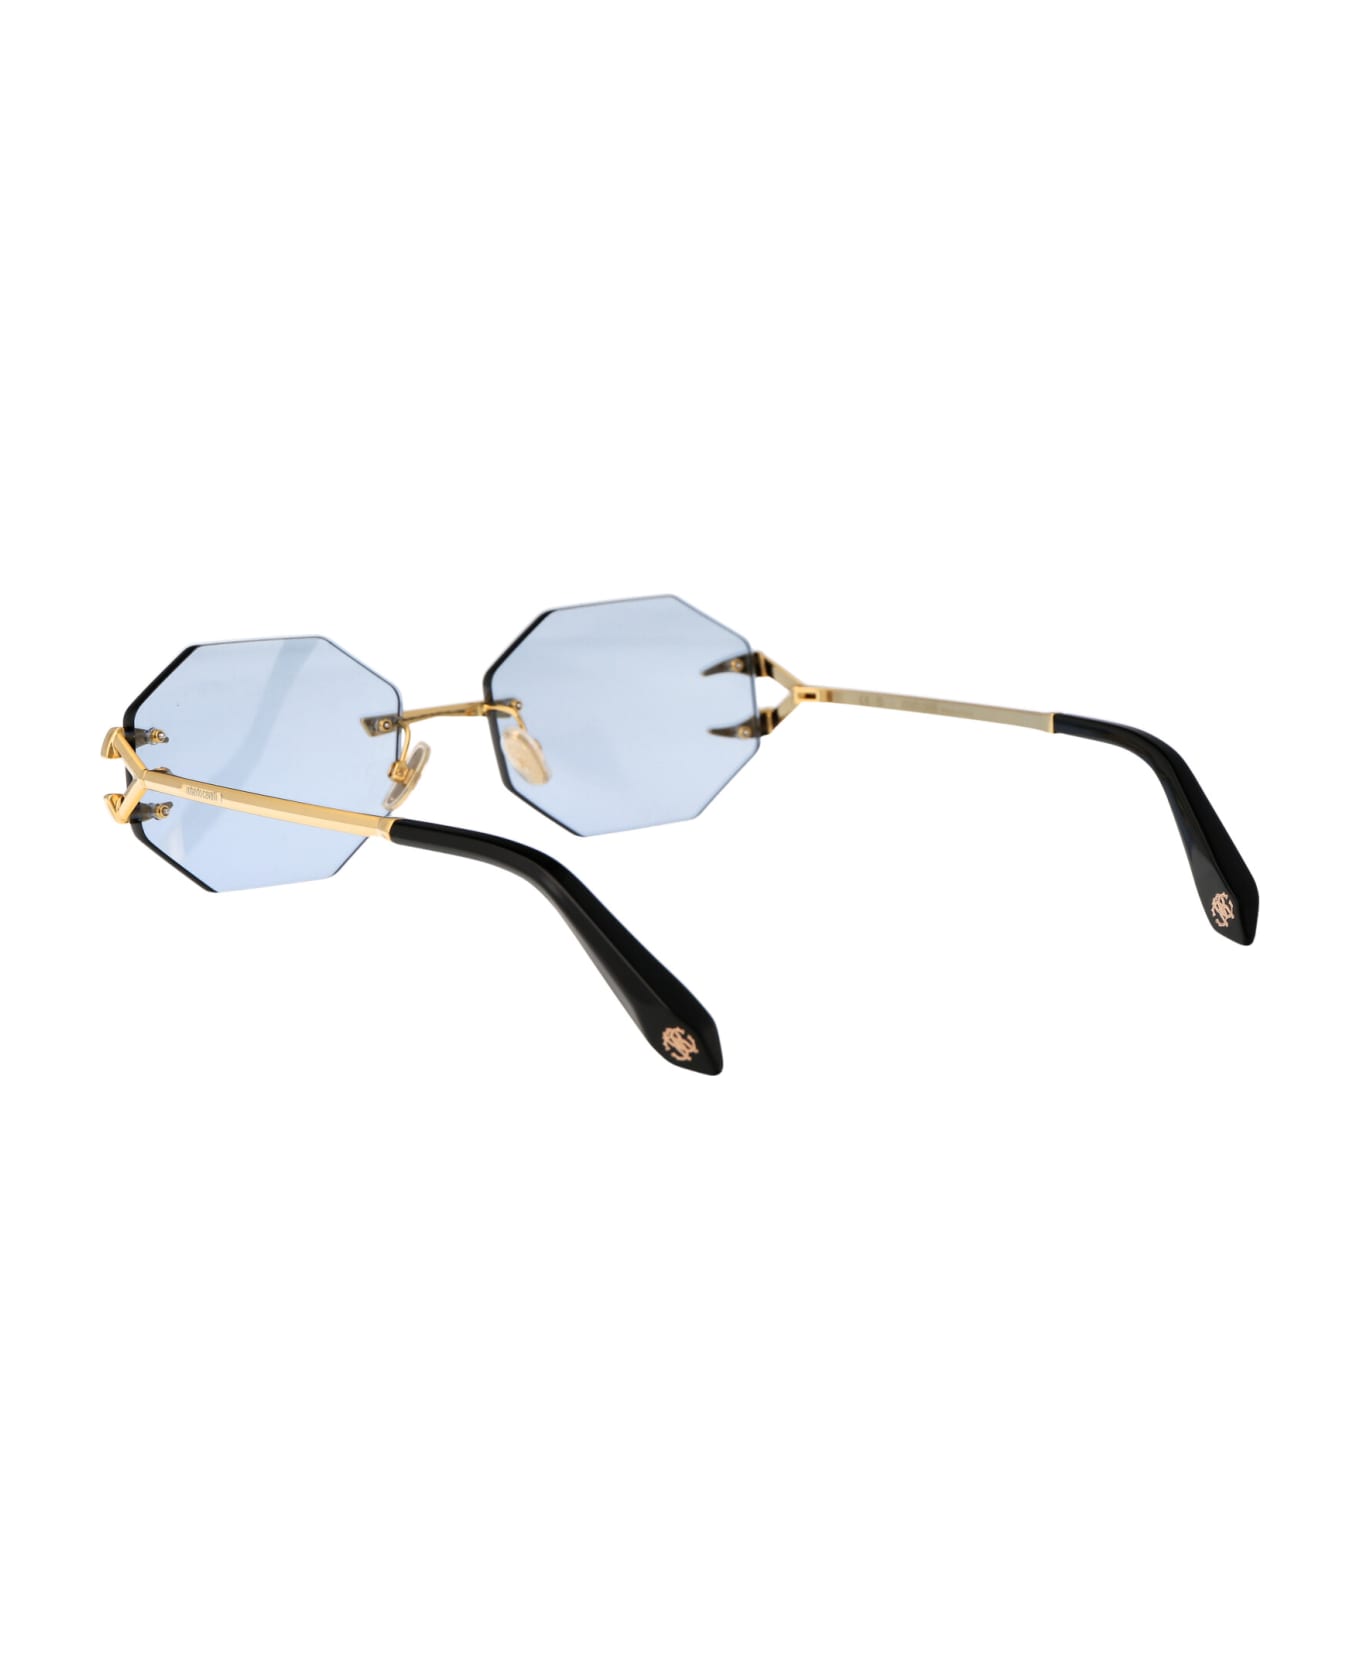 Roberto Cavalli Src005 Sunglasses - 400F GOLD